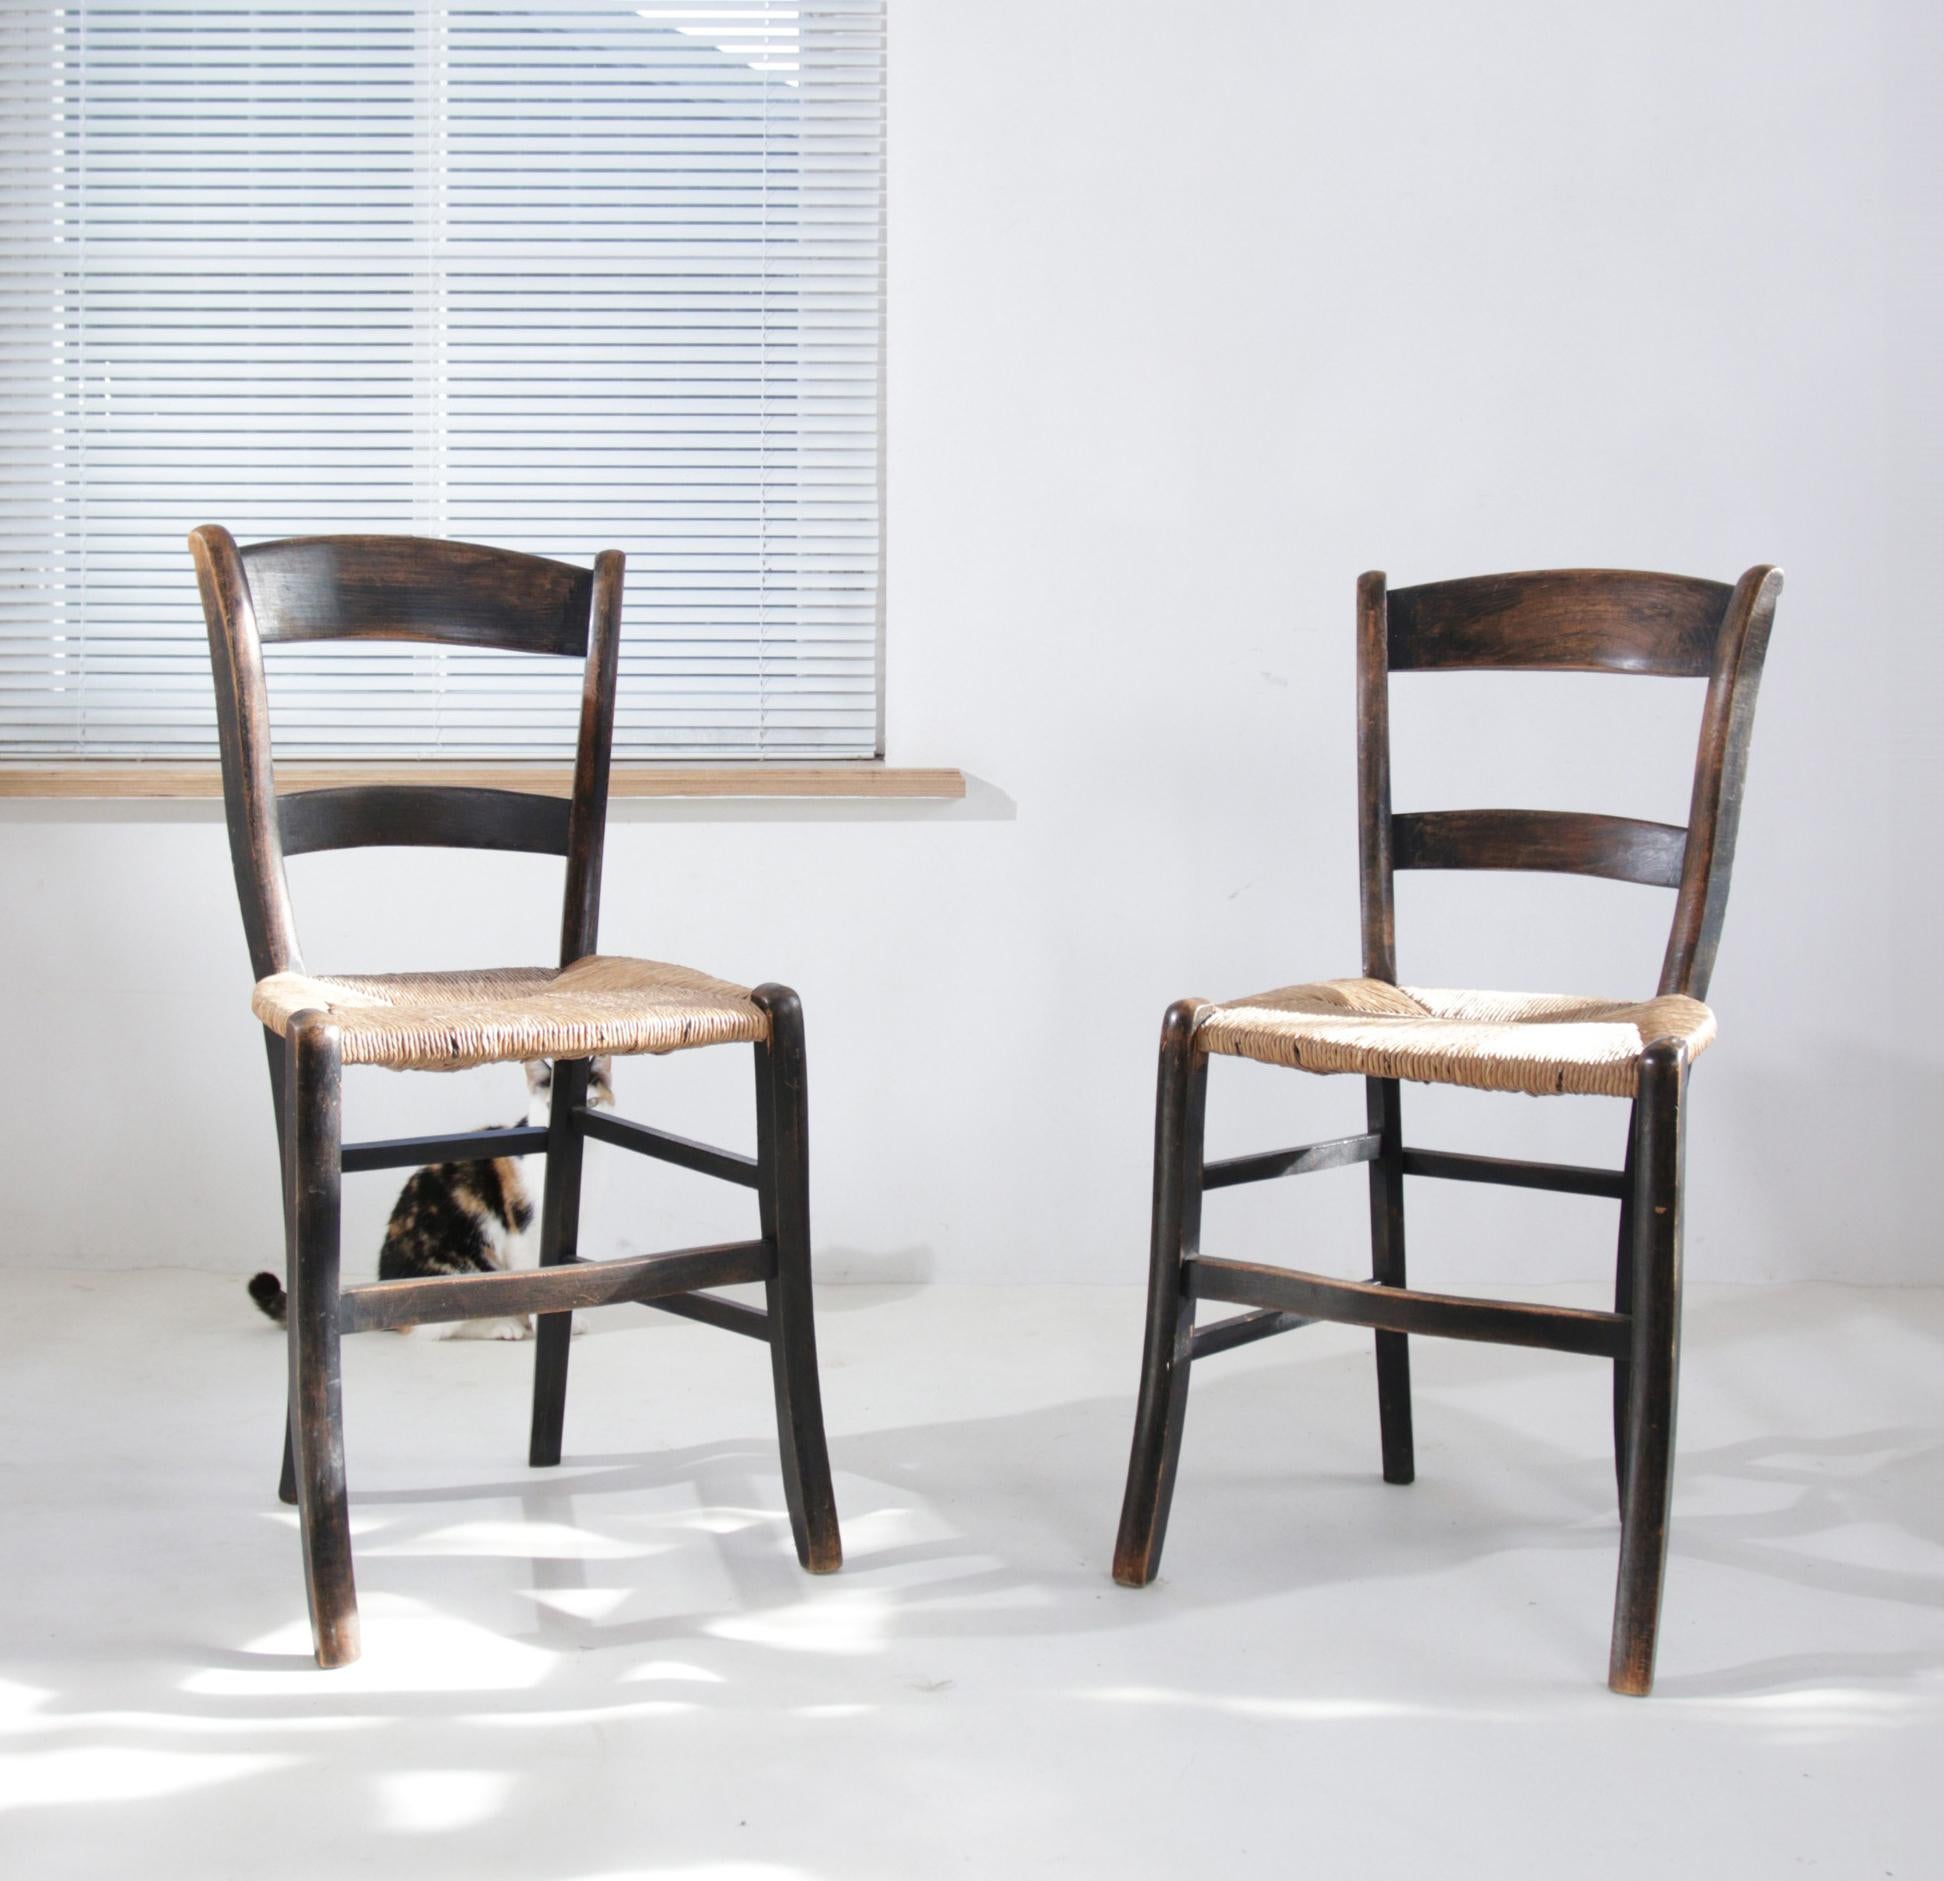 Diese eleganten Holzstühle, die vermutlich aus der Zeit Anfang bis Mitte des 20. Jahrhunderts stammen, sind ein Symbol für die Handwerkskunst dieser Zeit. Der dunkel gefärbte und in seiner Schlichtheit anmutige Holzrahmen verbindet Funktionalität